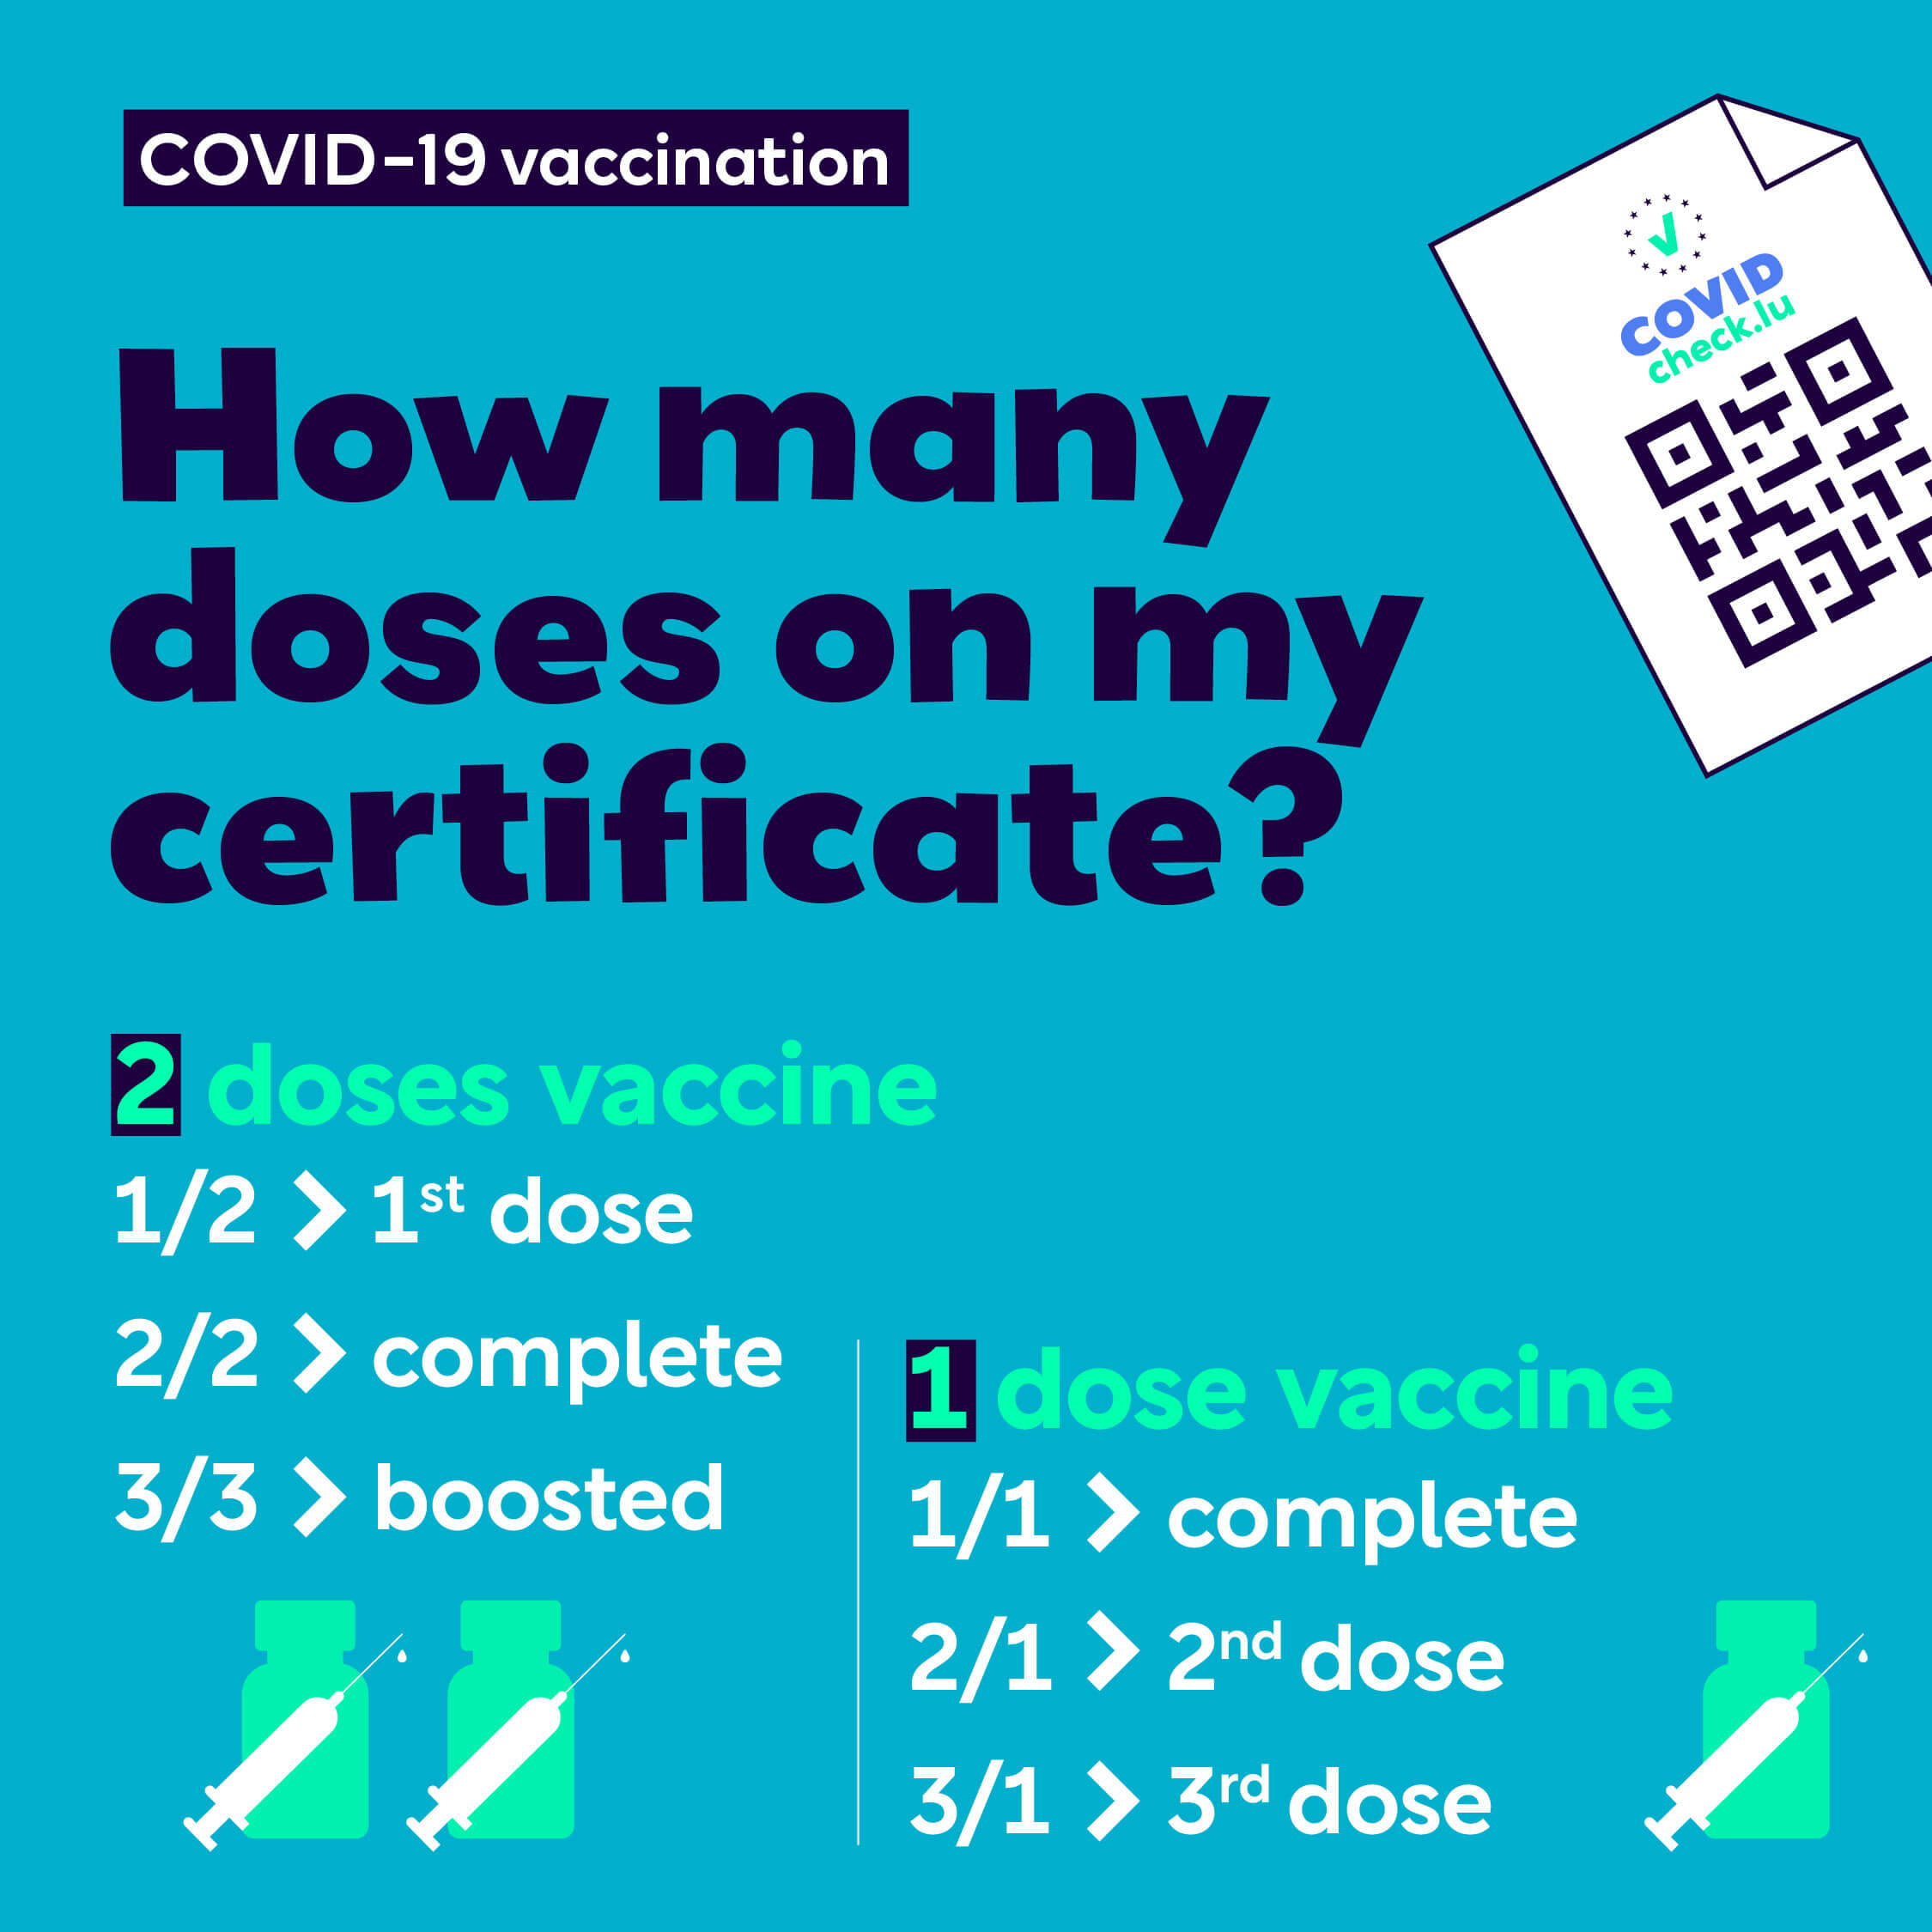 Visuel expliquant comment est communiqué le statut de vaccination sur les certificats